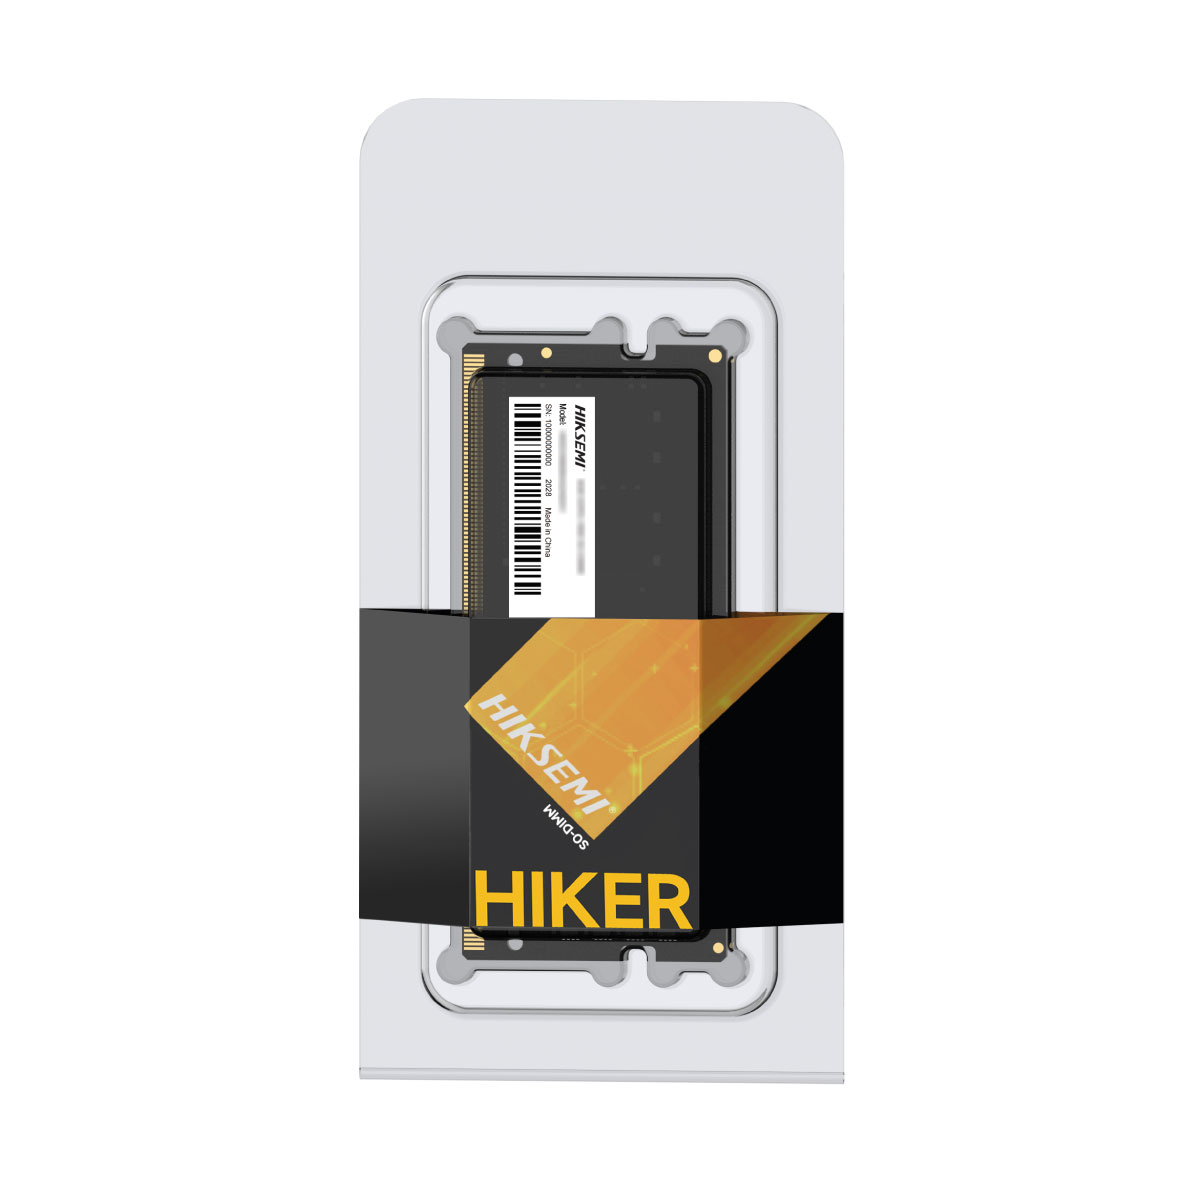 MEMORIA RAM HIKSEMI HIKER 8GB DDR4 3200MHZ SODIMM